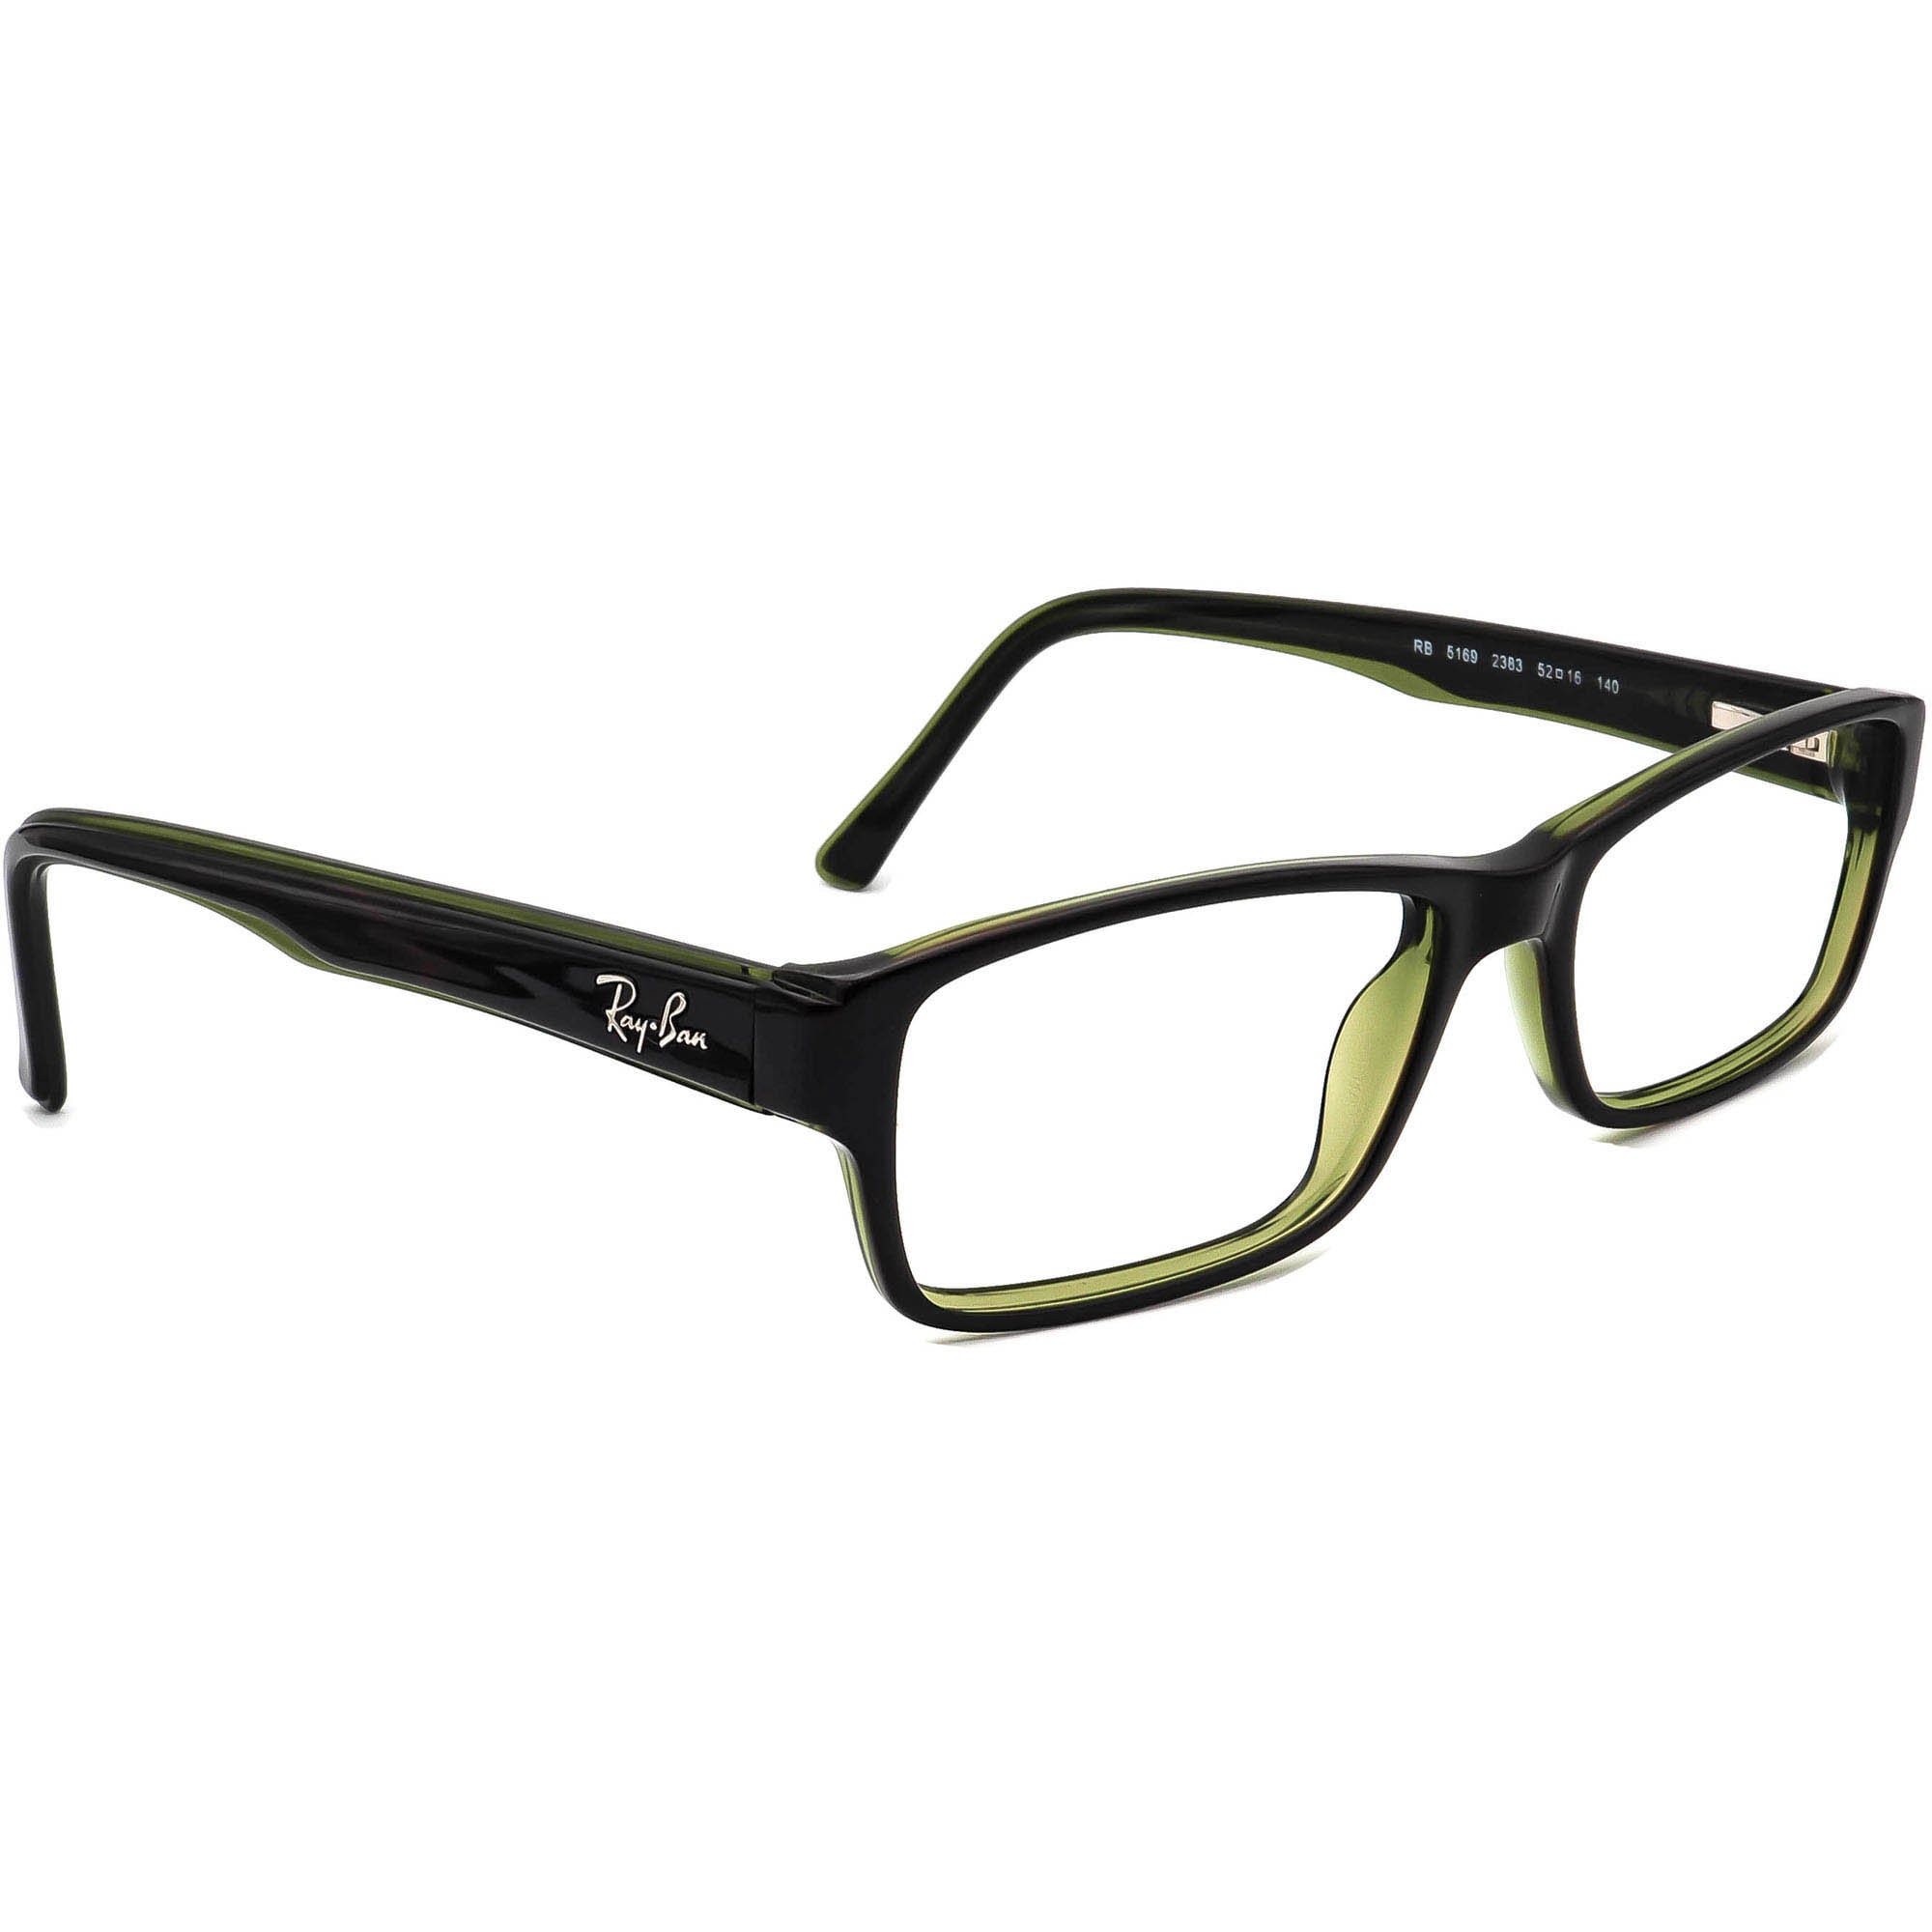 Ray-ban Eyeglasses RB 5169 2383 Dark Tortoise/green - Etsy UK